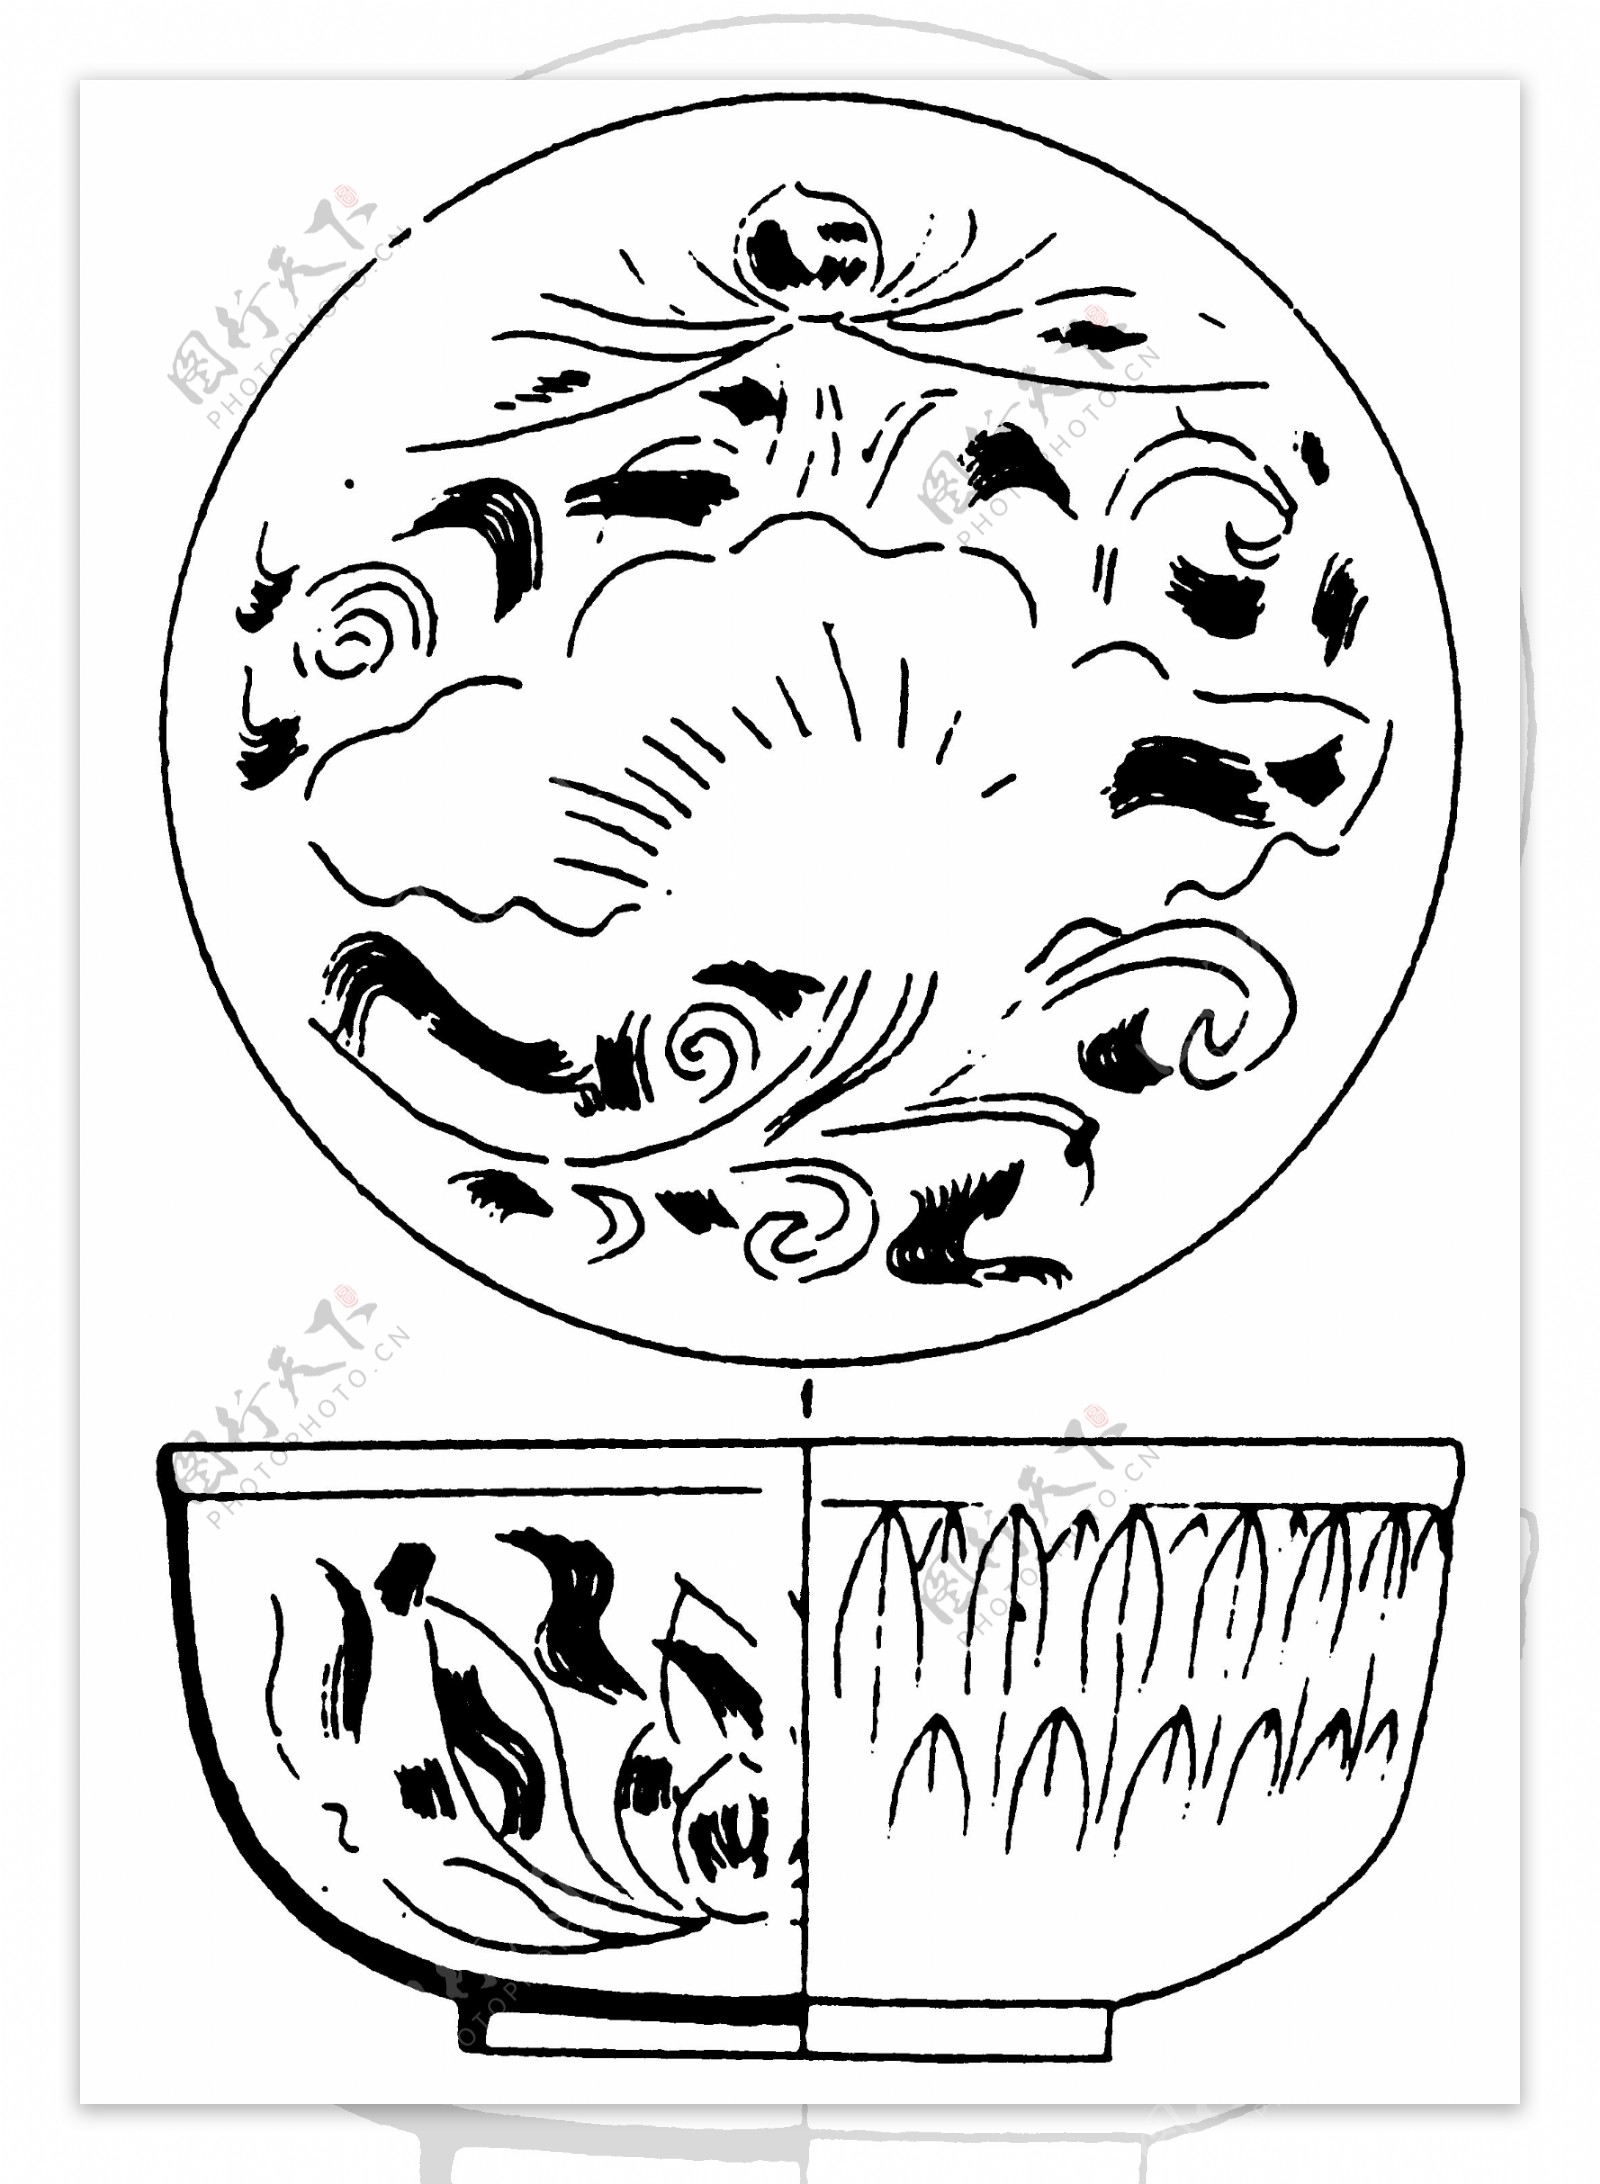 器物图案两宋时代图案中国传统图案148